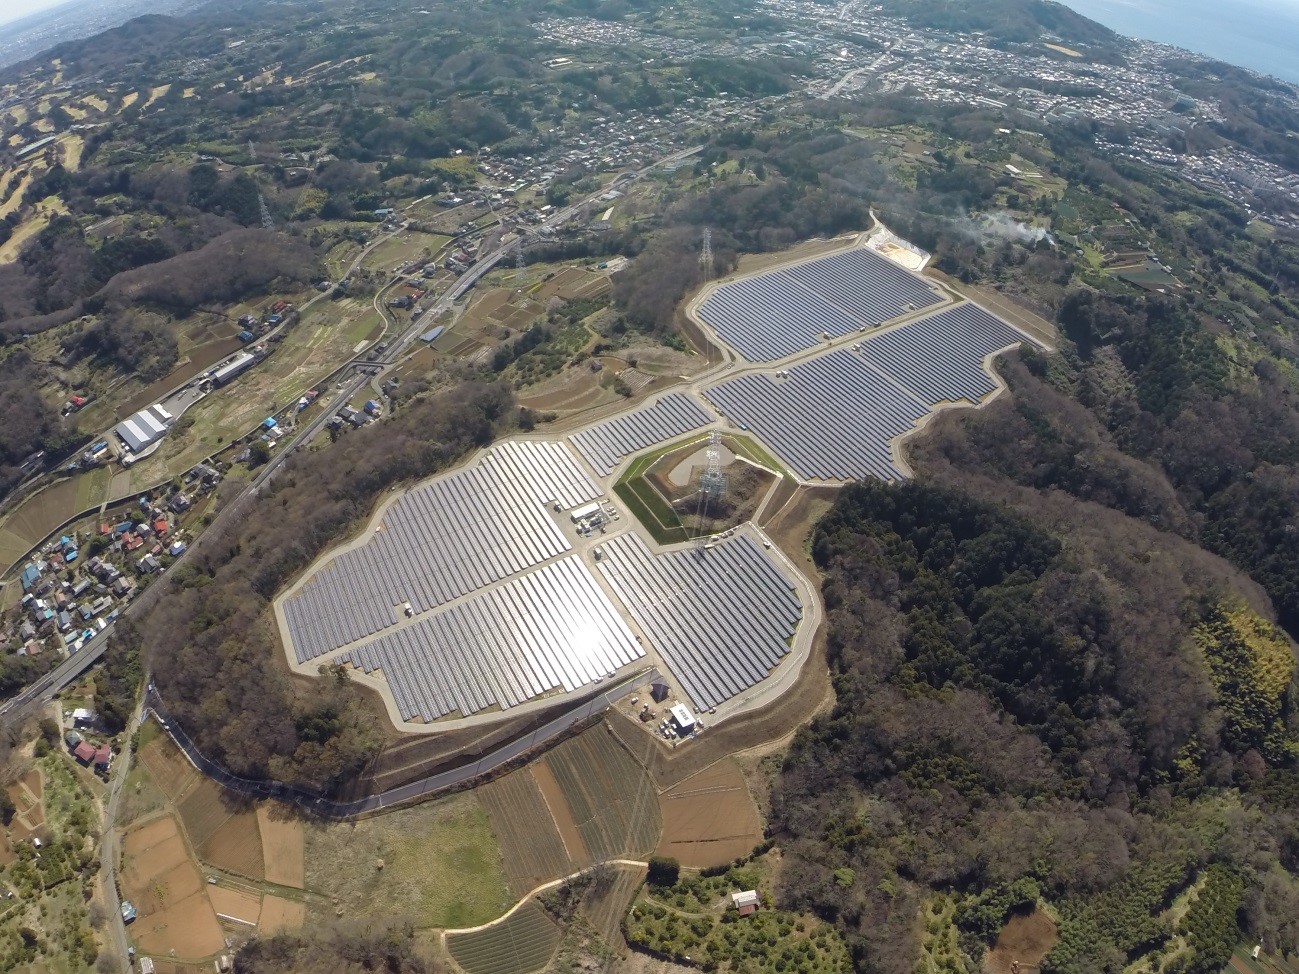 神奈川県の誘致による最大 10メガワット のメガソーラー ｓｇｅｔ中井メガソーラー 発電所 が4月27日 月 に完成 稼動開始 神奈川県住宅供給公社のプレスリリース